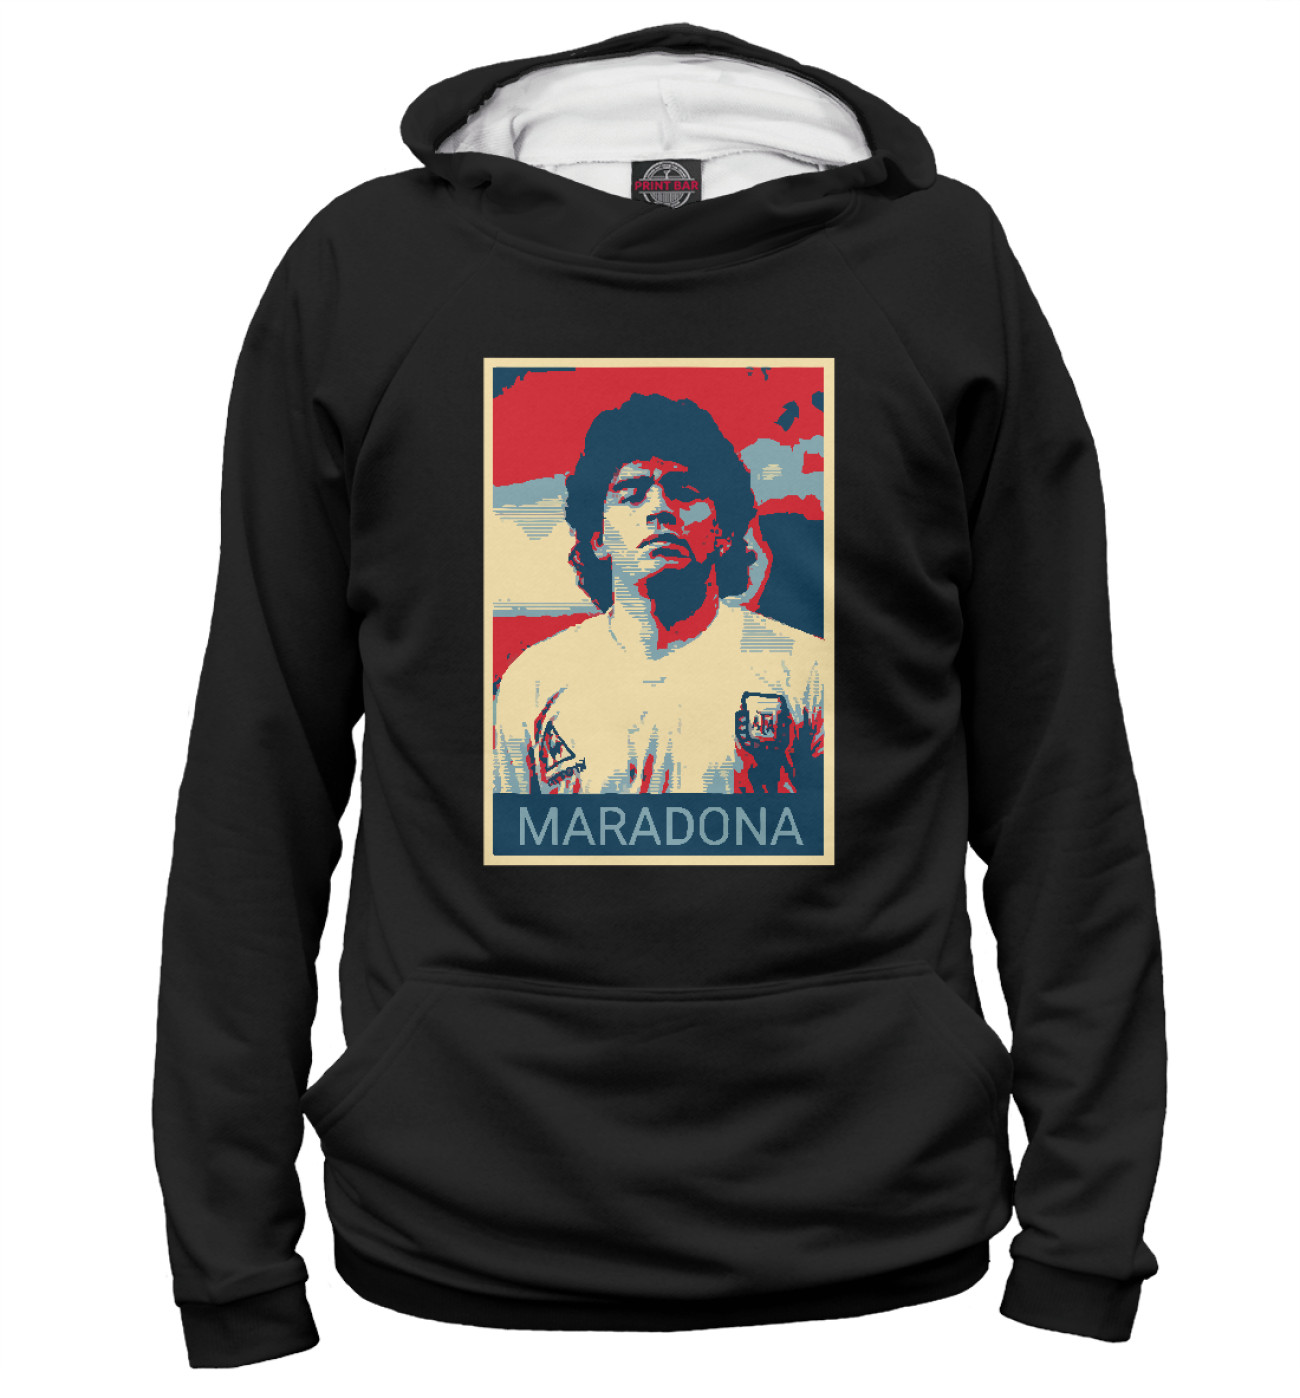 Мужское Худи Maradona, артикул: FLT-836145-hud-2